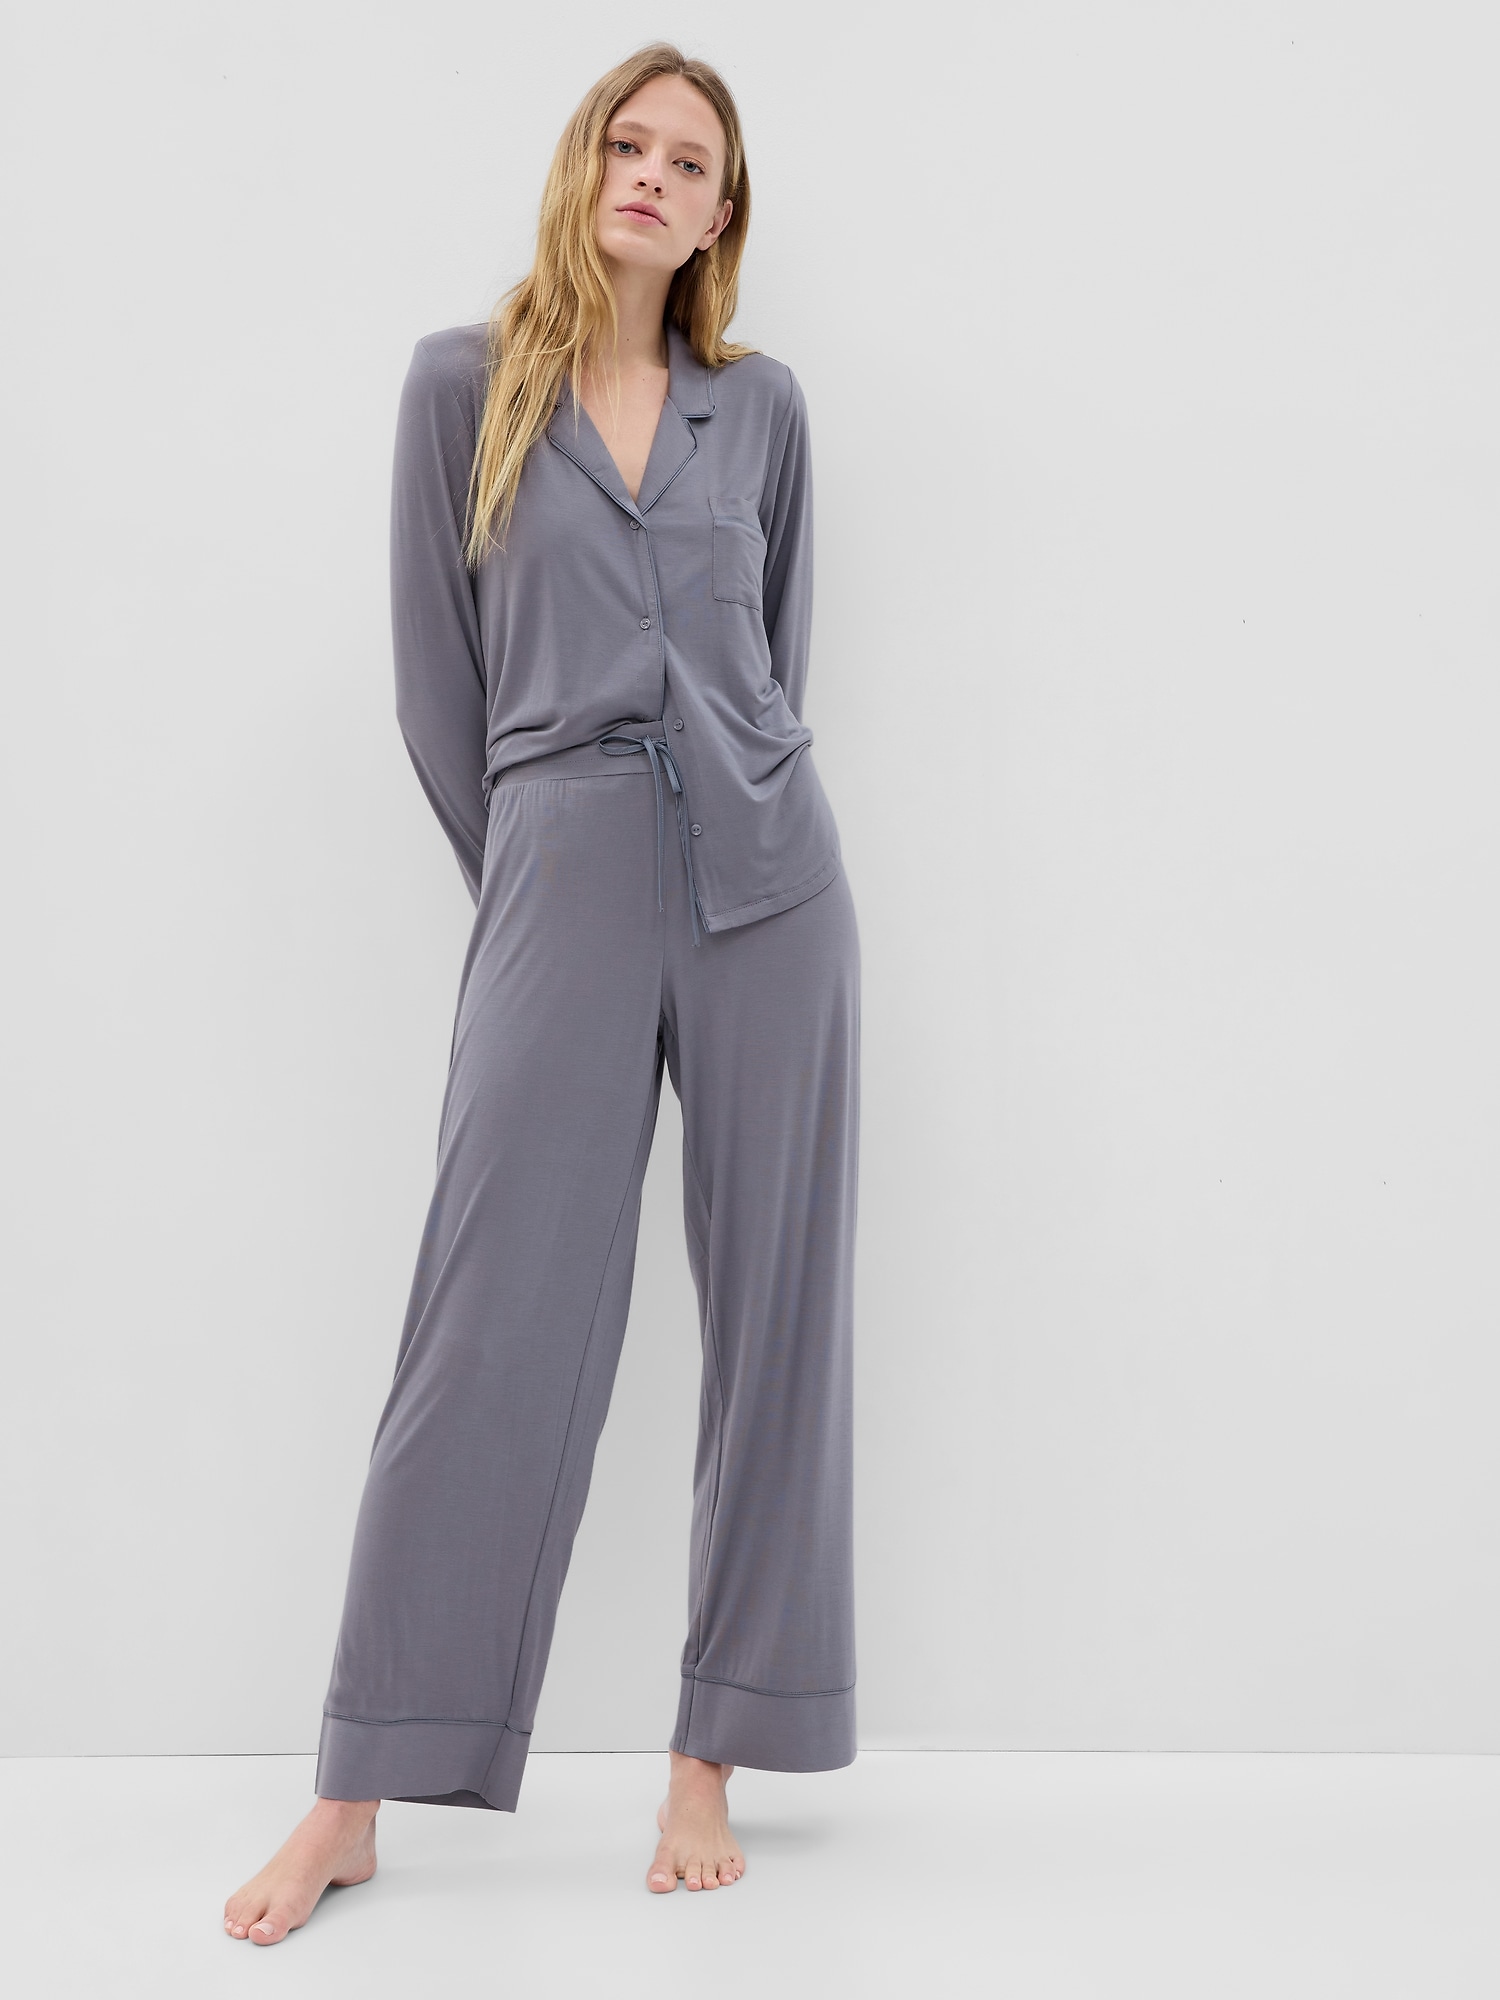 Modal Pyjamas For Women, Modal PJs